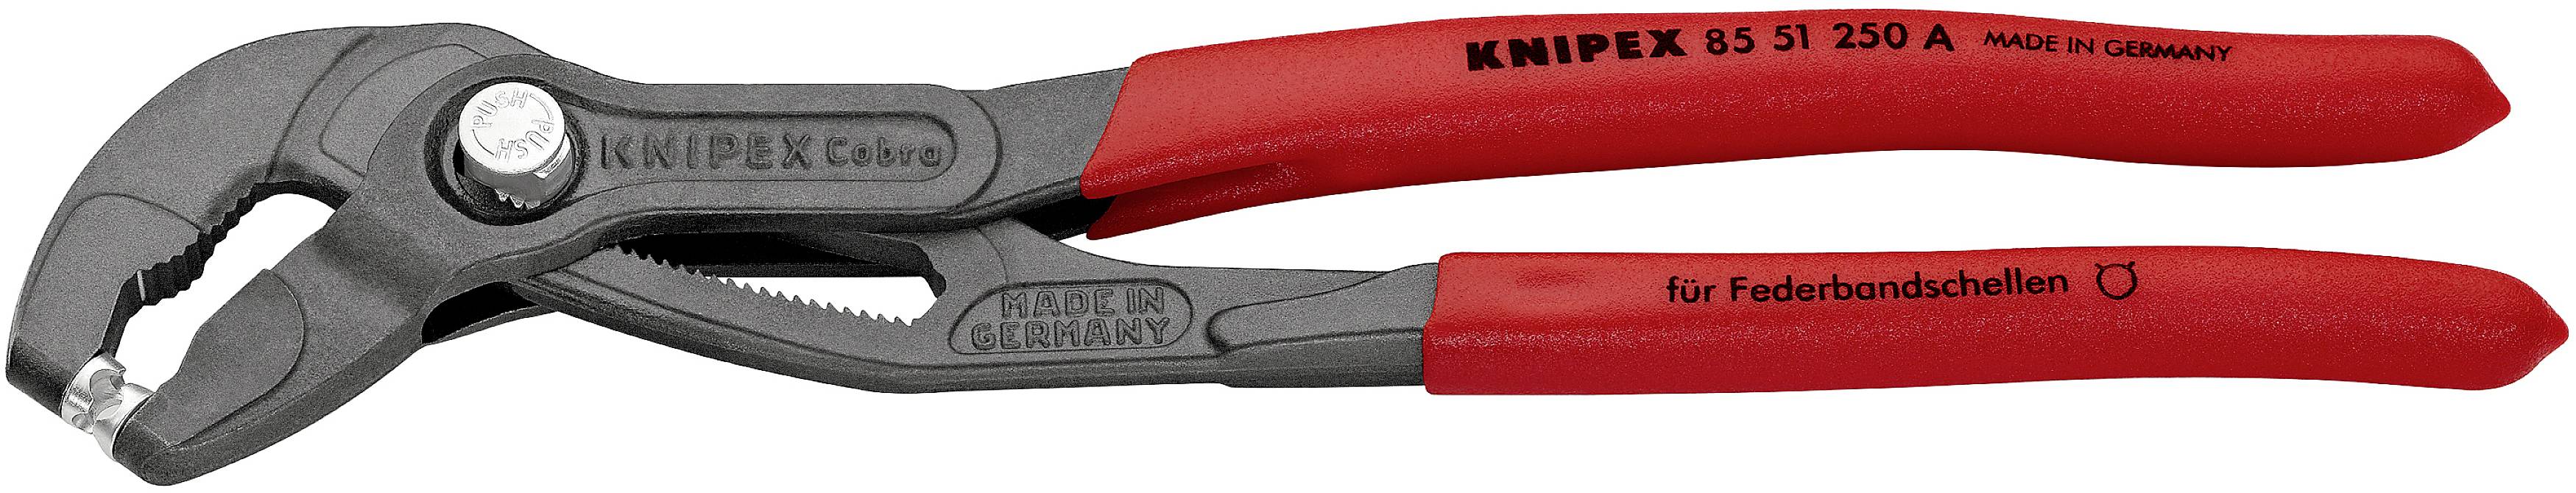 KNIPEX Federbandschellenzange 250 mm 85 51 250 A (85 51 250 A)